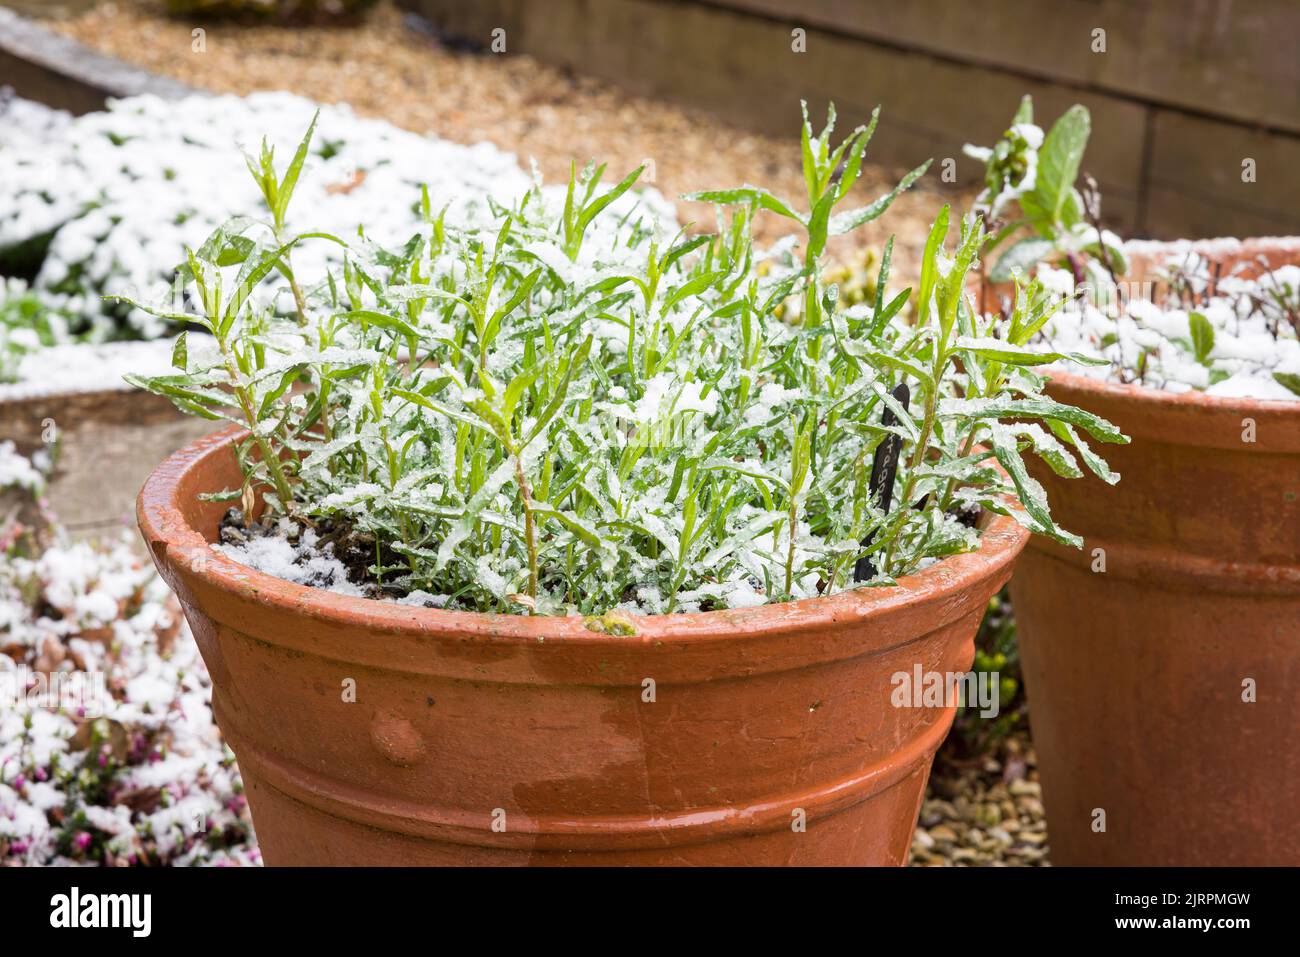 Plante herbacée à l'estragon français (artemisia dracunculus) dans une plante en terre cuite à la fin de l'hiver ou au début du printemps, recouverte de neige dans un jardin britannique Banque D'Images